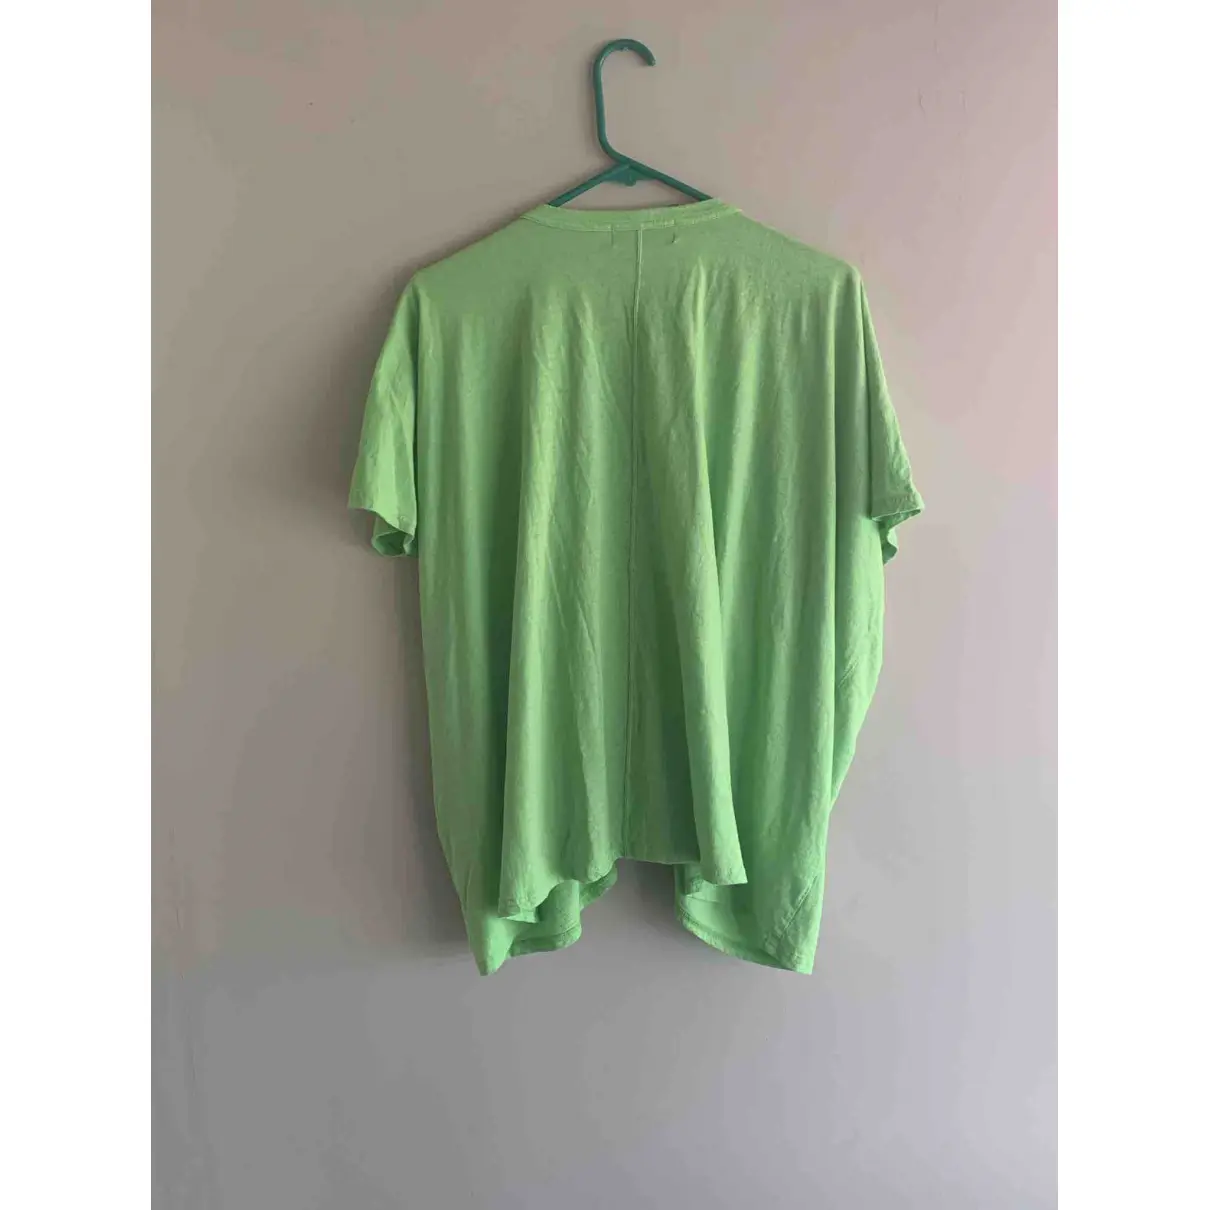 Buy Zucca Green Cotton Top online